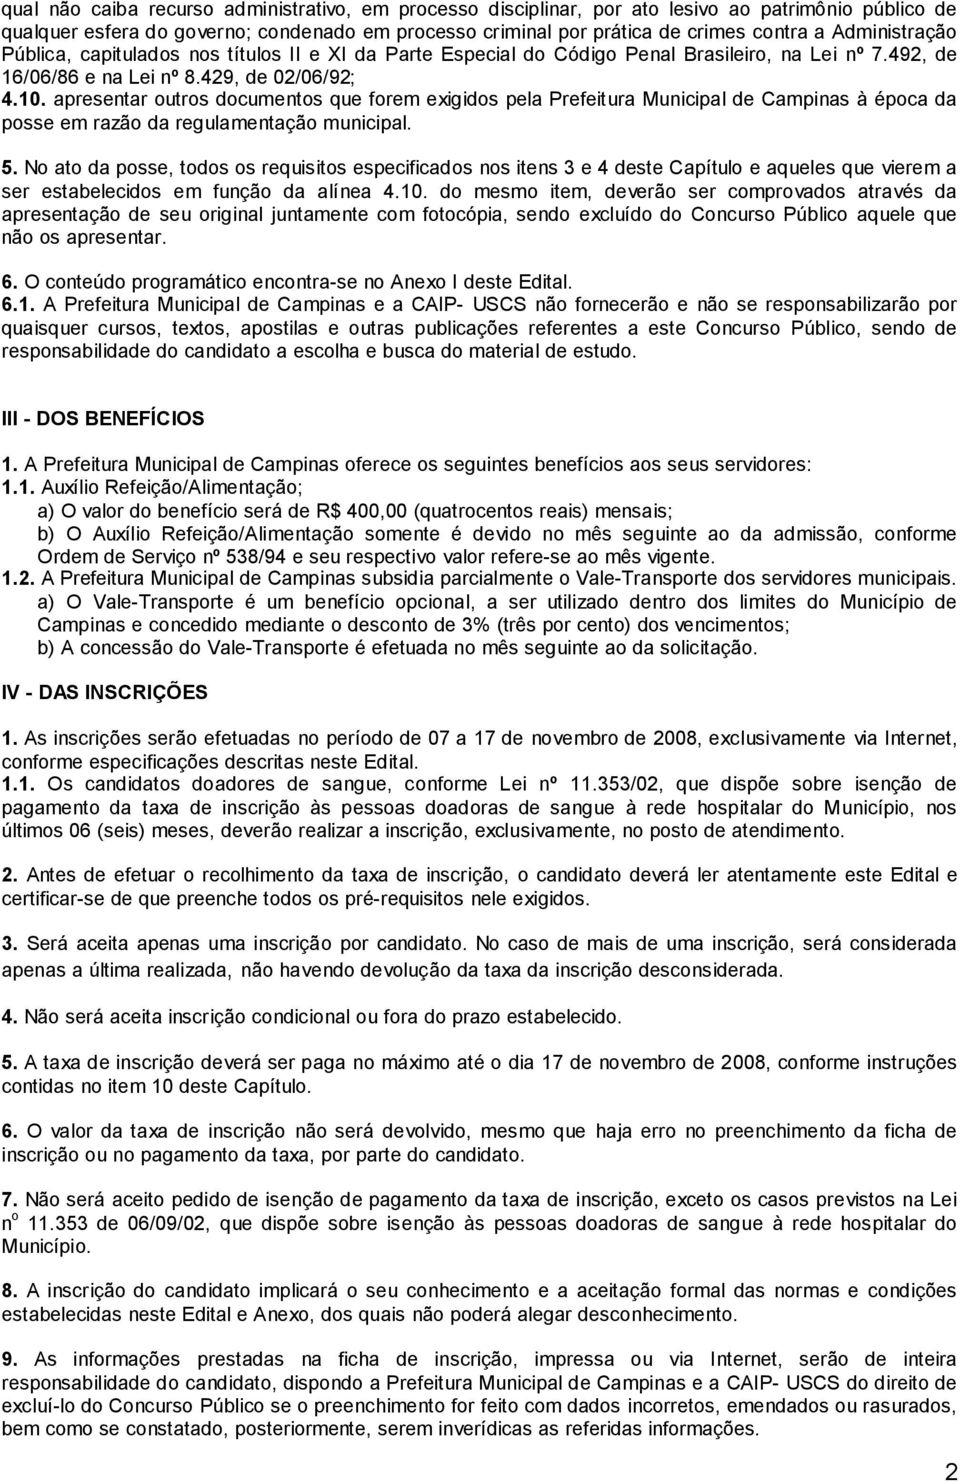 apresentar outros documentos que forem exigidos pela Prefeitura Municipal de Campinas à época da posse em razão da regulamentação municipal. 5.